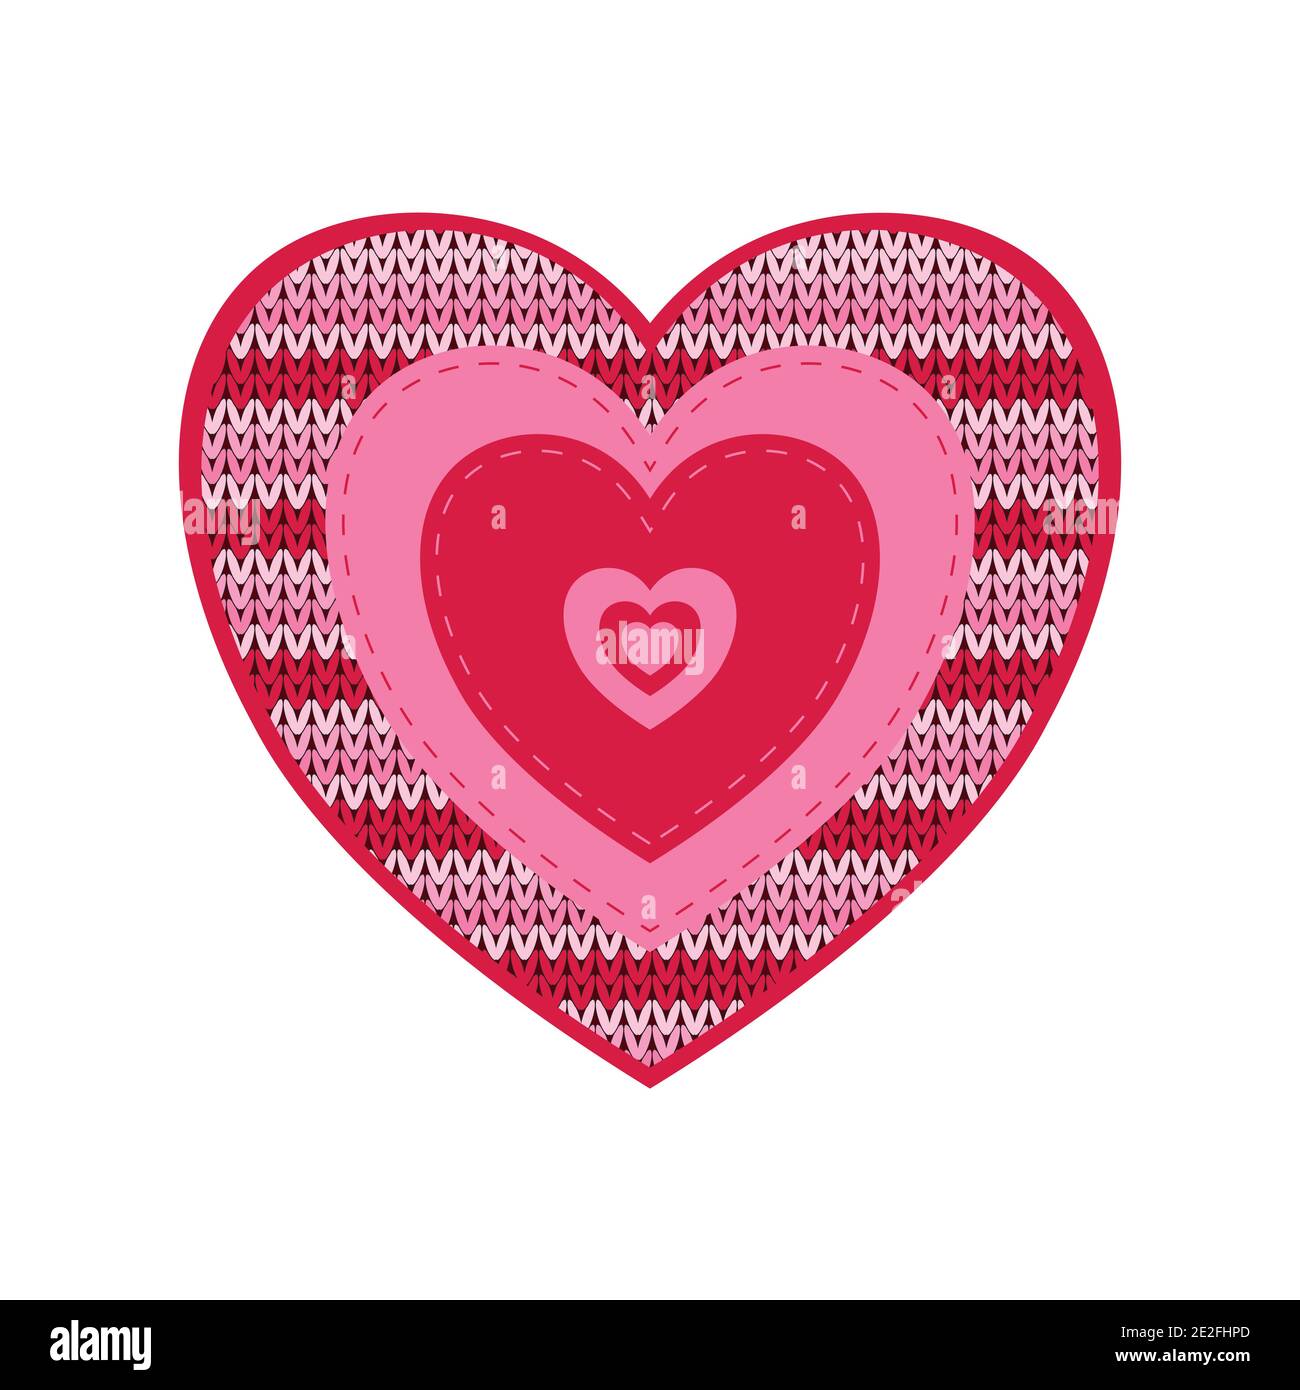 Cuore rosso lavorato a maglia per San Valentino con l'iscrizione Love, isolato su sfondo bianco. Immagine piatta vettoriale. Illustrazione Vettoriale